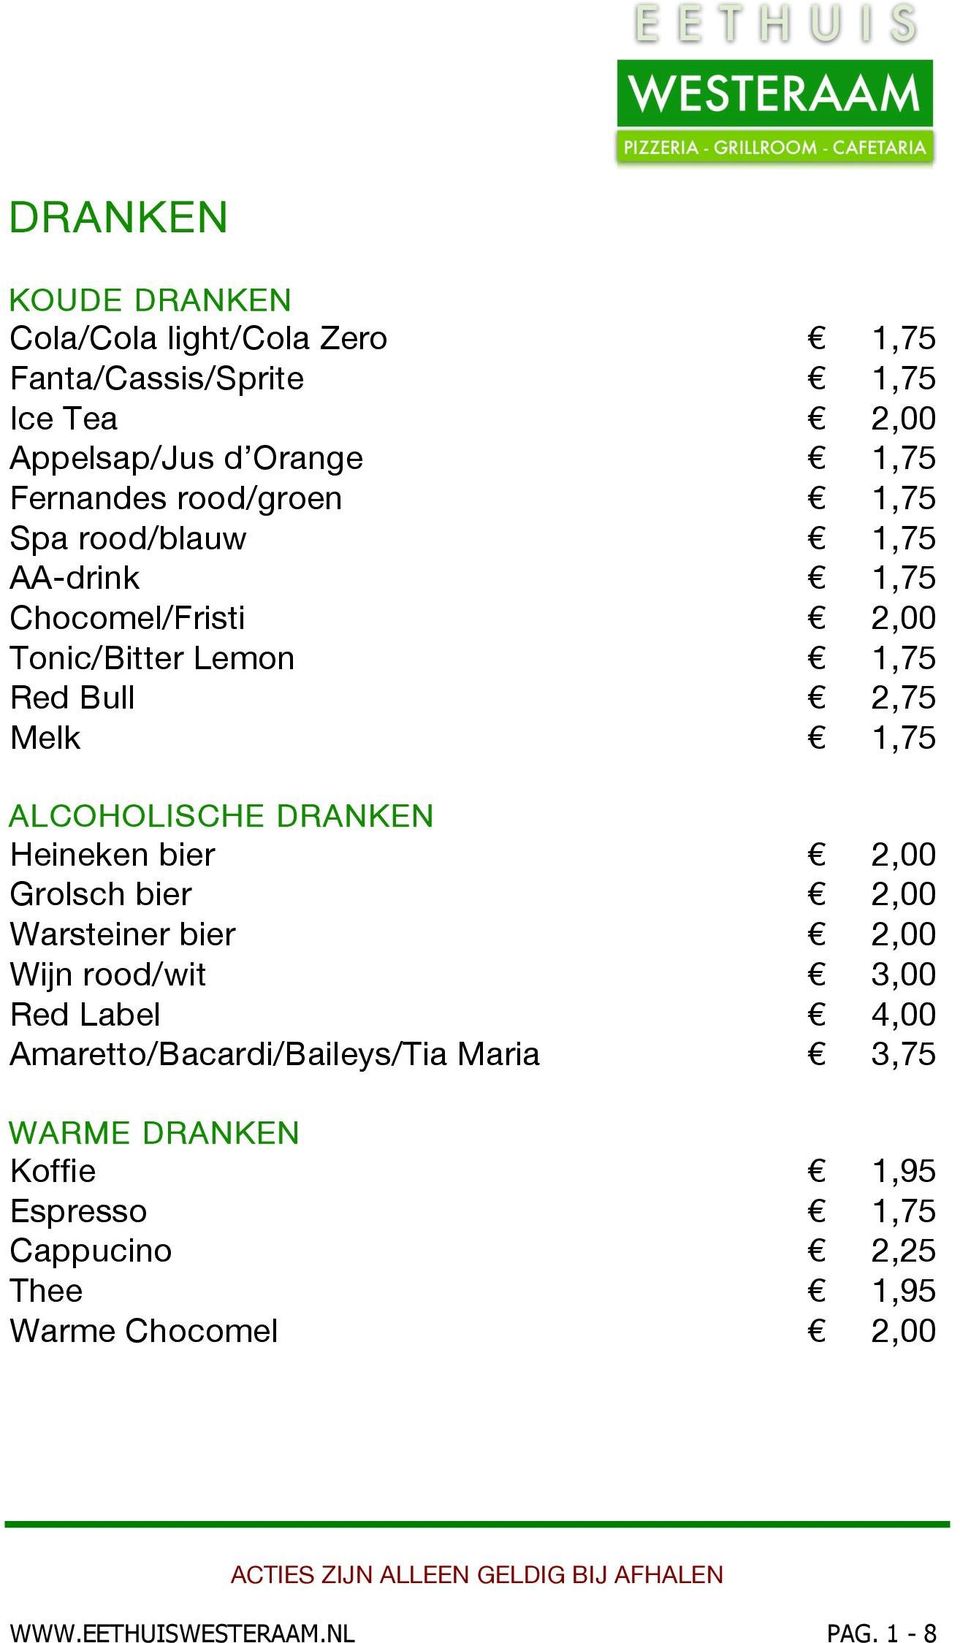 ALCOHOLISCHE DRANKEN Heineken bier 2,00 Grolsch bier 2,00 Warsteiner bier 2,00 Wijn rood/wit 3,00 Red Label 4,00